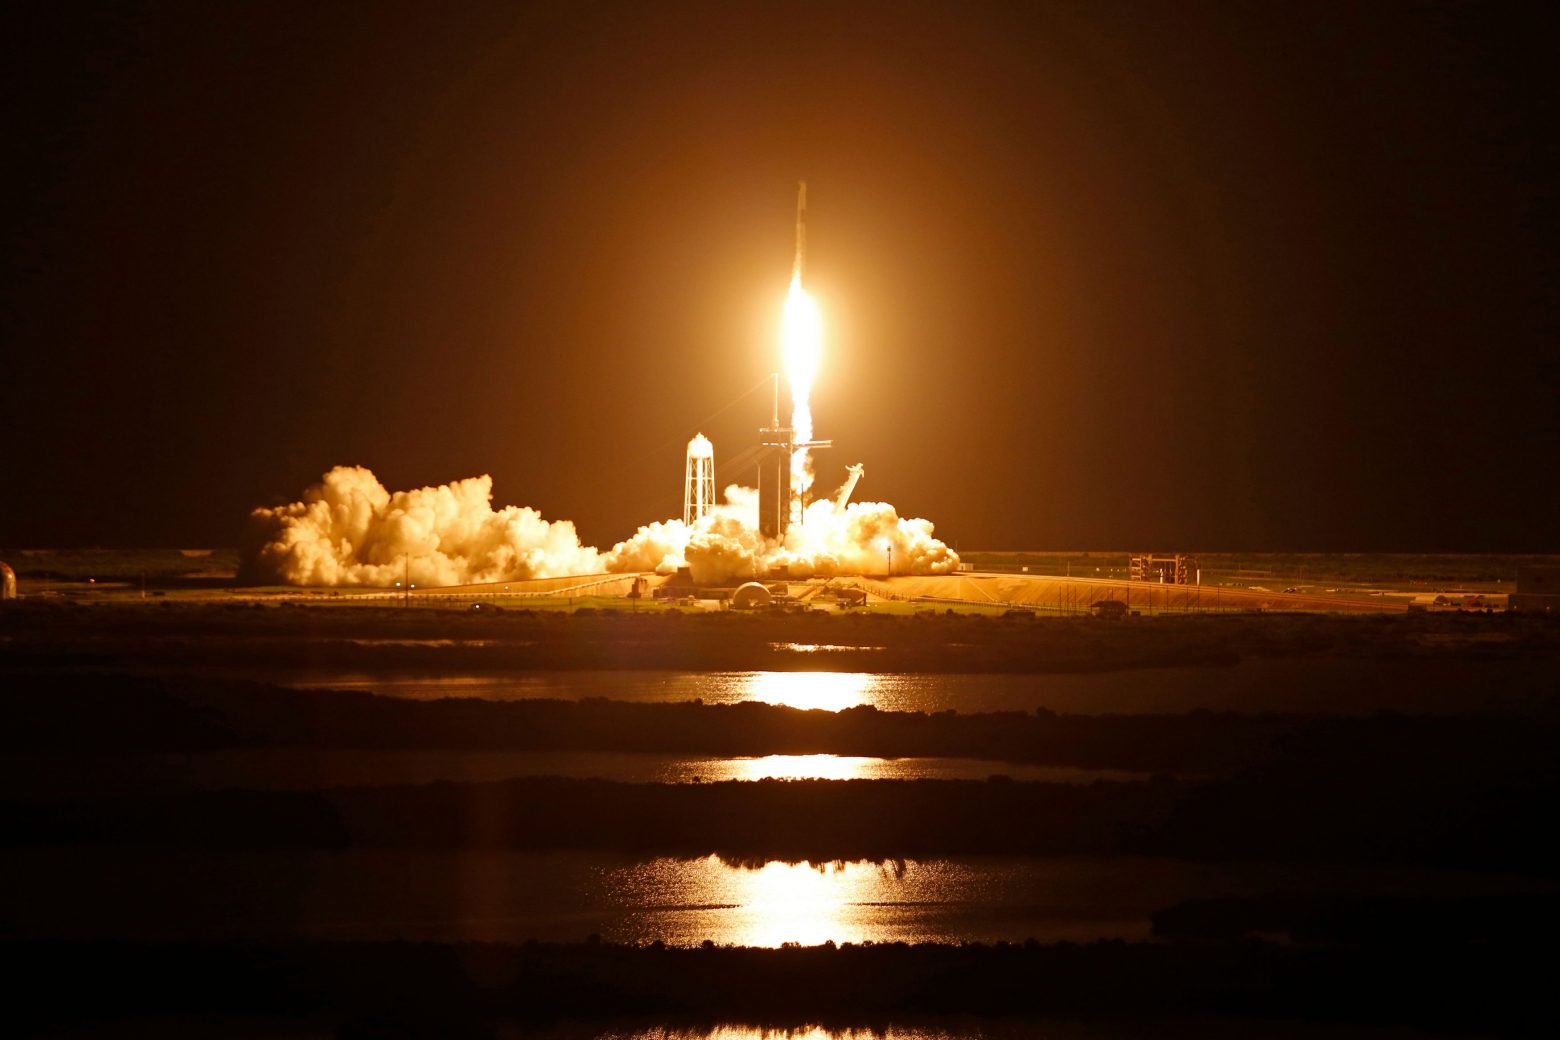 SpaceX - Τι θα κάνουν στο ταξίδι τους στο Διάστημα οι ερασιτέχνες αστροναύτες;